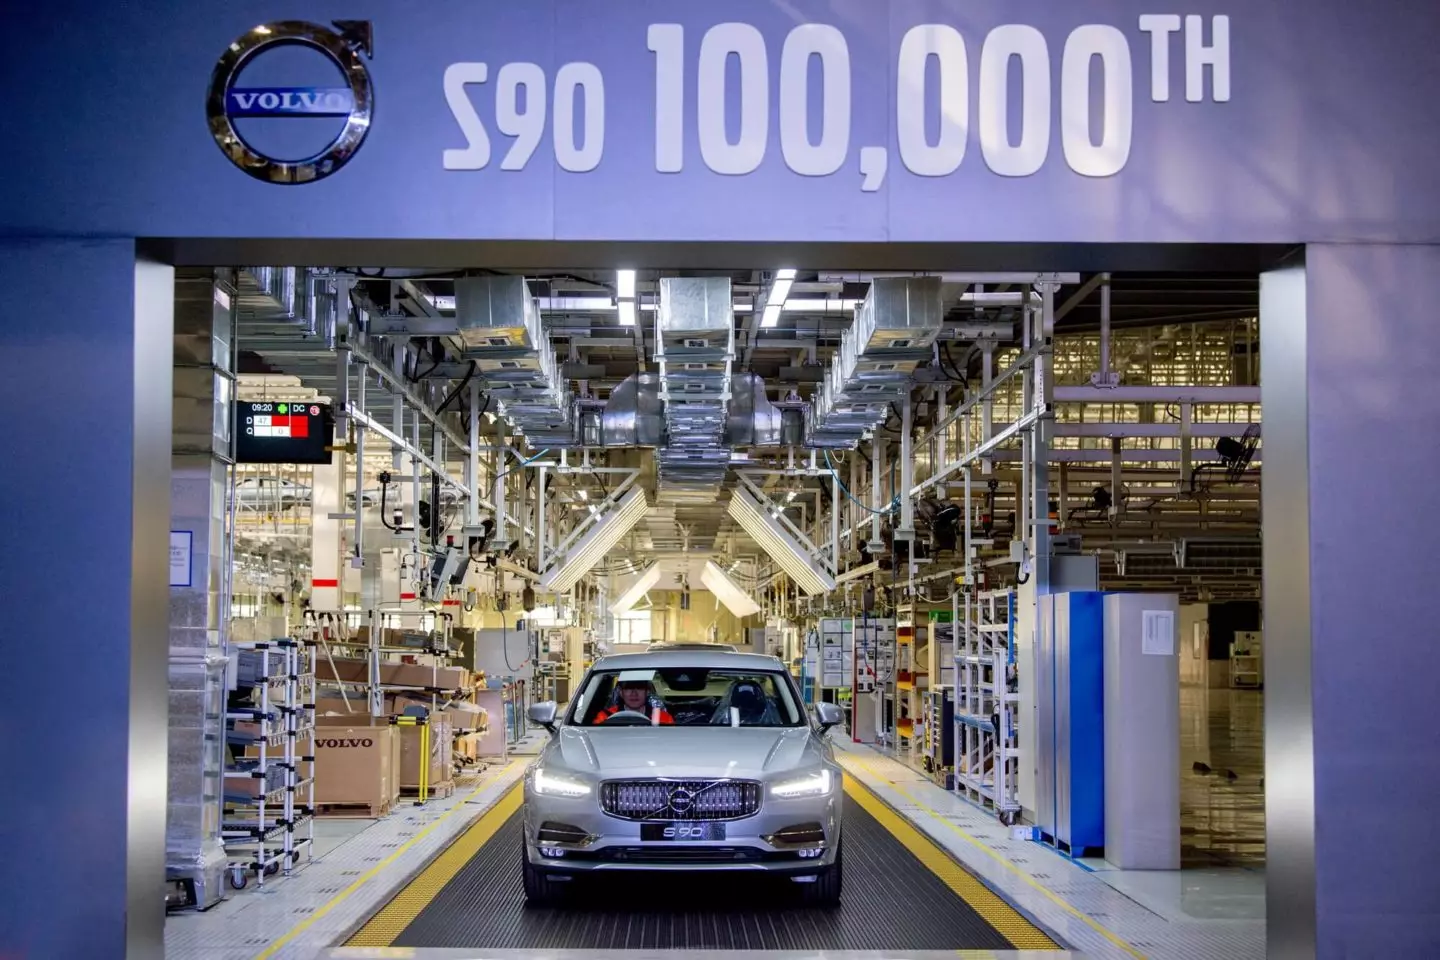 వోల్వో S90 100,000 యూనిట్లు